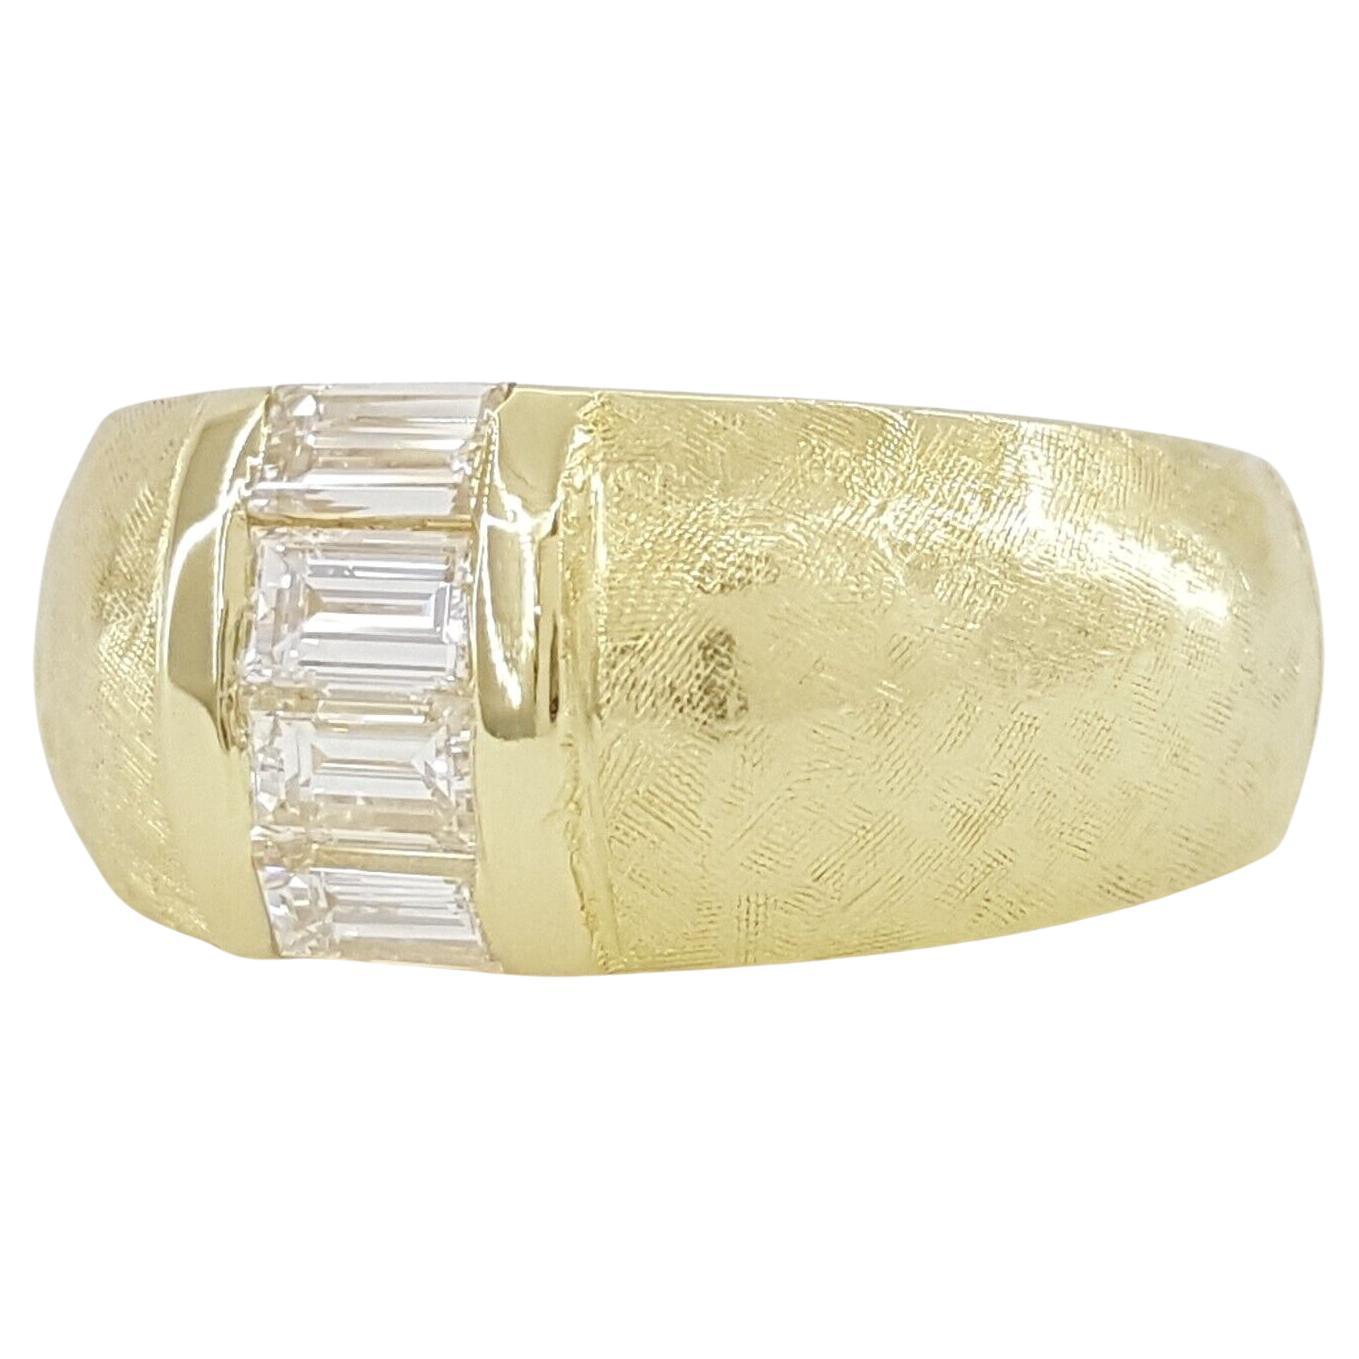 Superbe anneau de mariage/anniversaire en or jaune 18 carats avec diamant baguette taillé en brillant et serti en canal !

L'élégance rencontre la sophistication dans cette bague exquise, méticuleusement fabriquée pour symboliser l'amour et